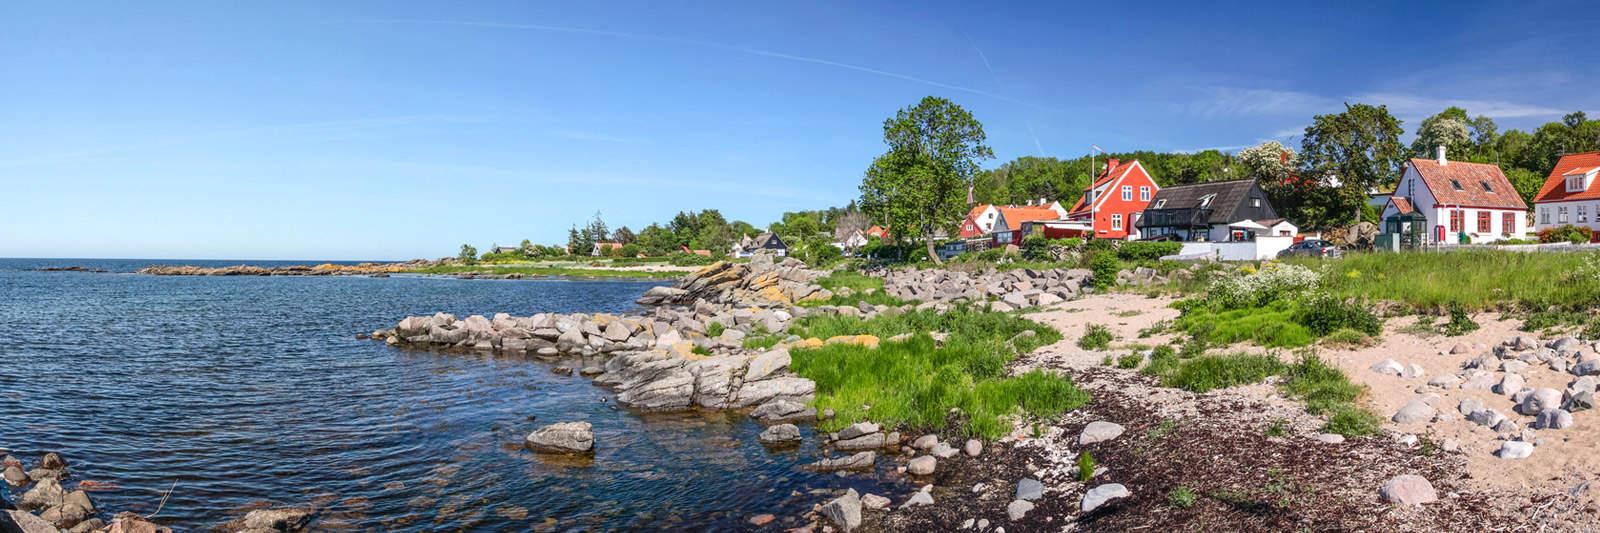 32 Ferienwohnungen und Ferienhäuser am Kjul Strand - tourist-online.de